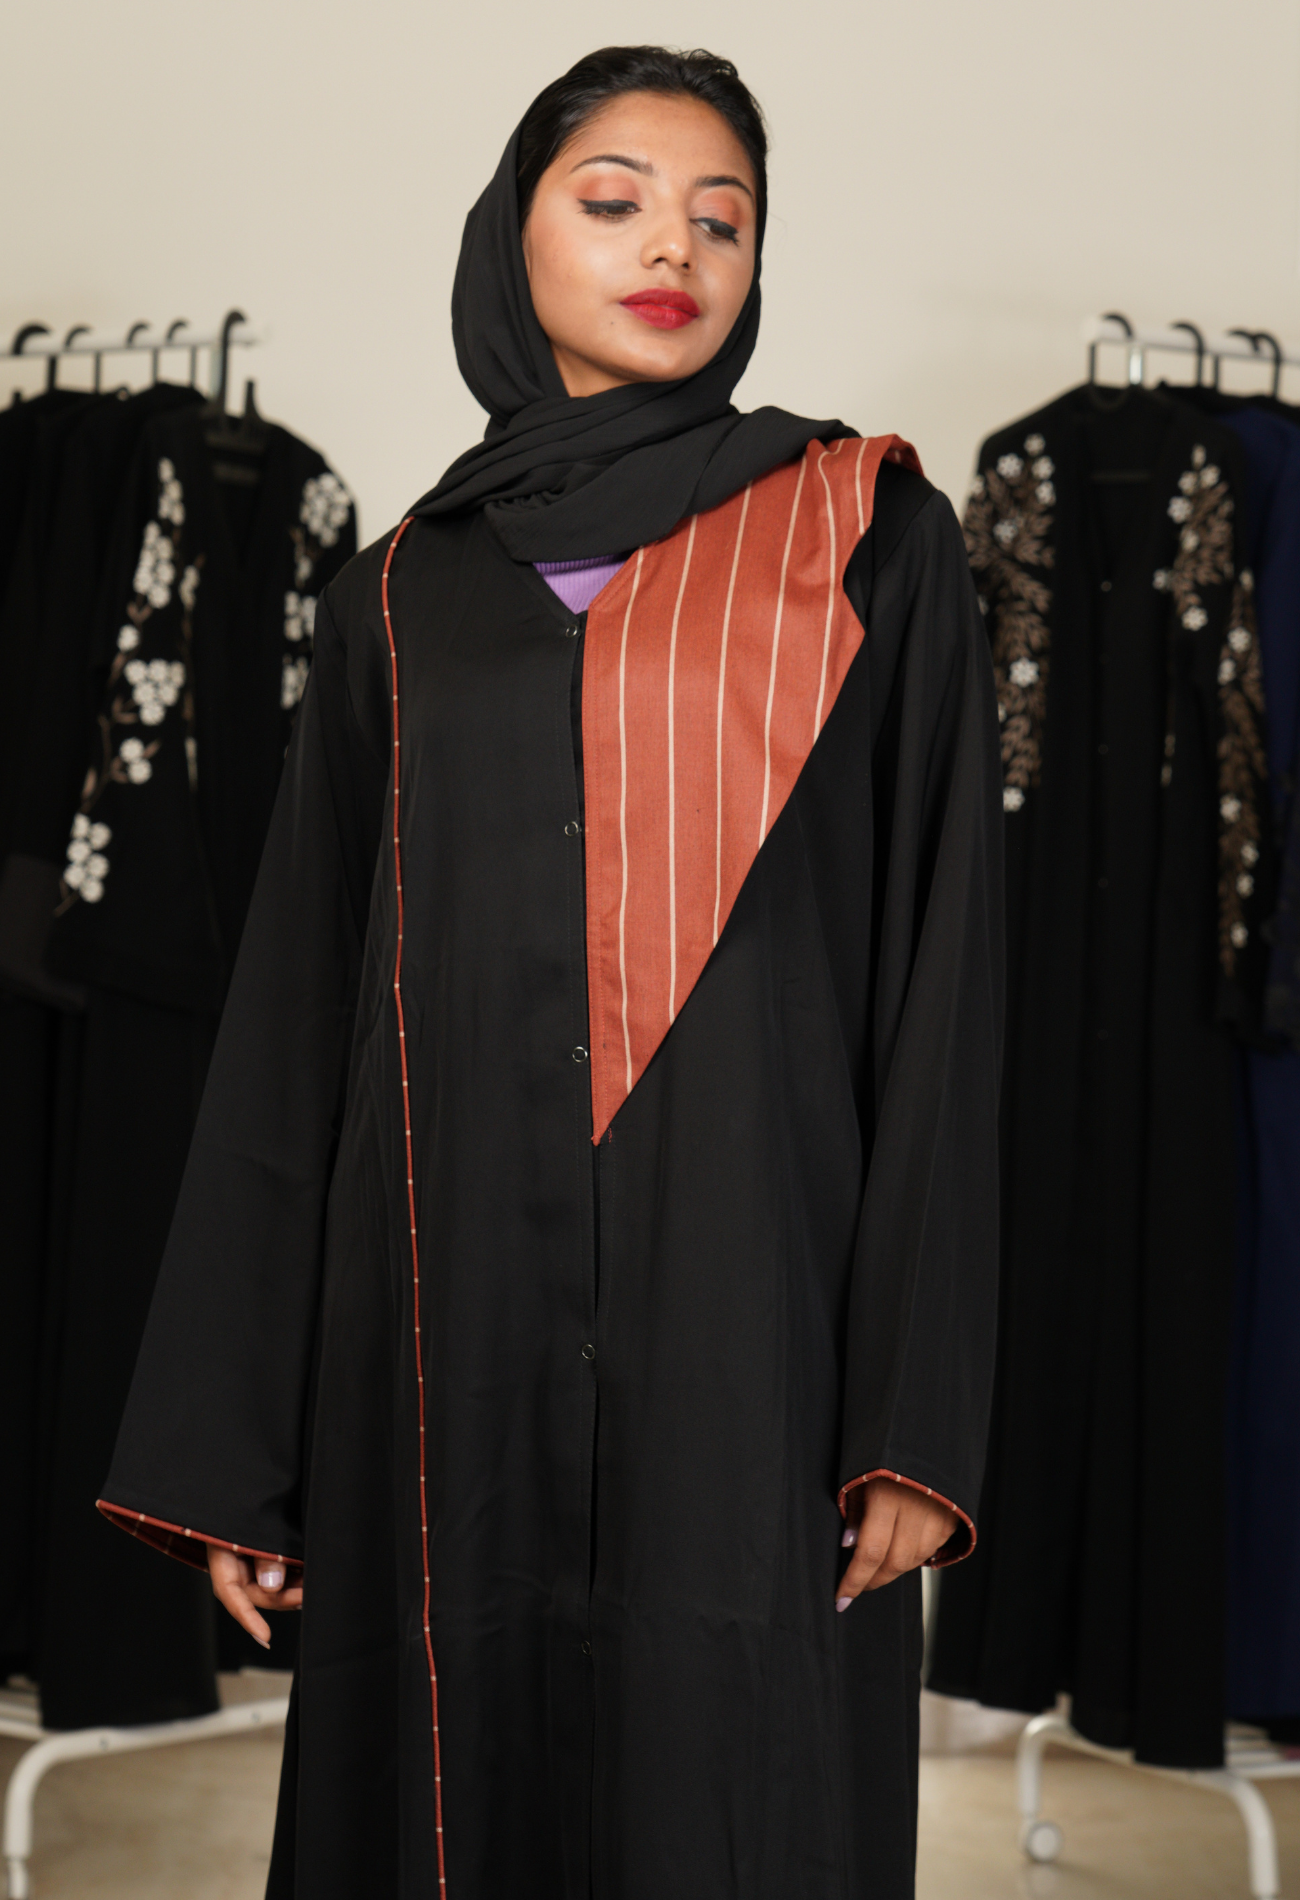 Black Front Open Abaya With Suit Laple